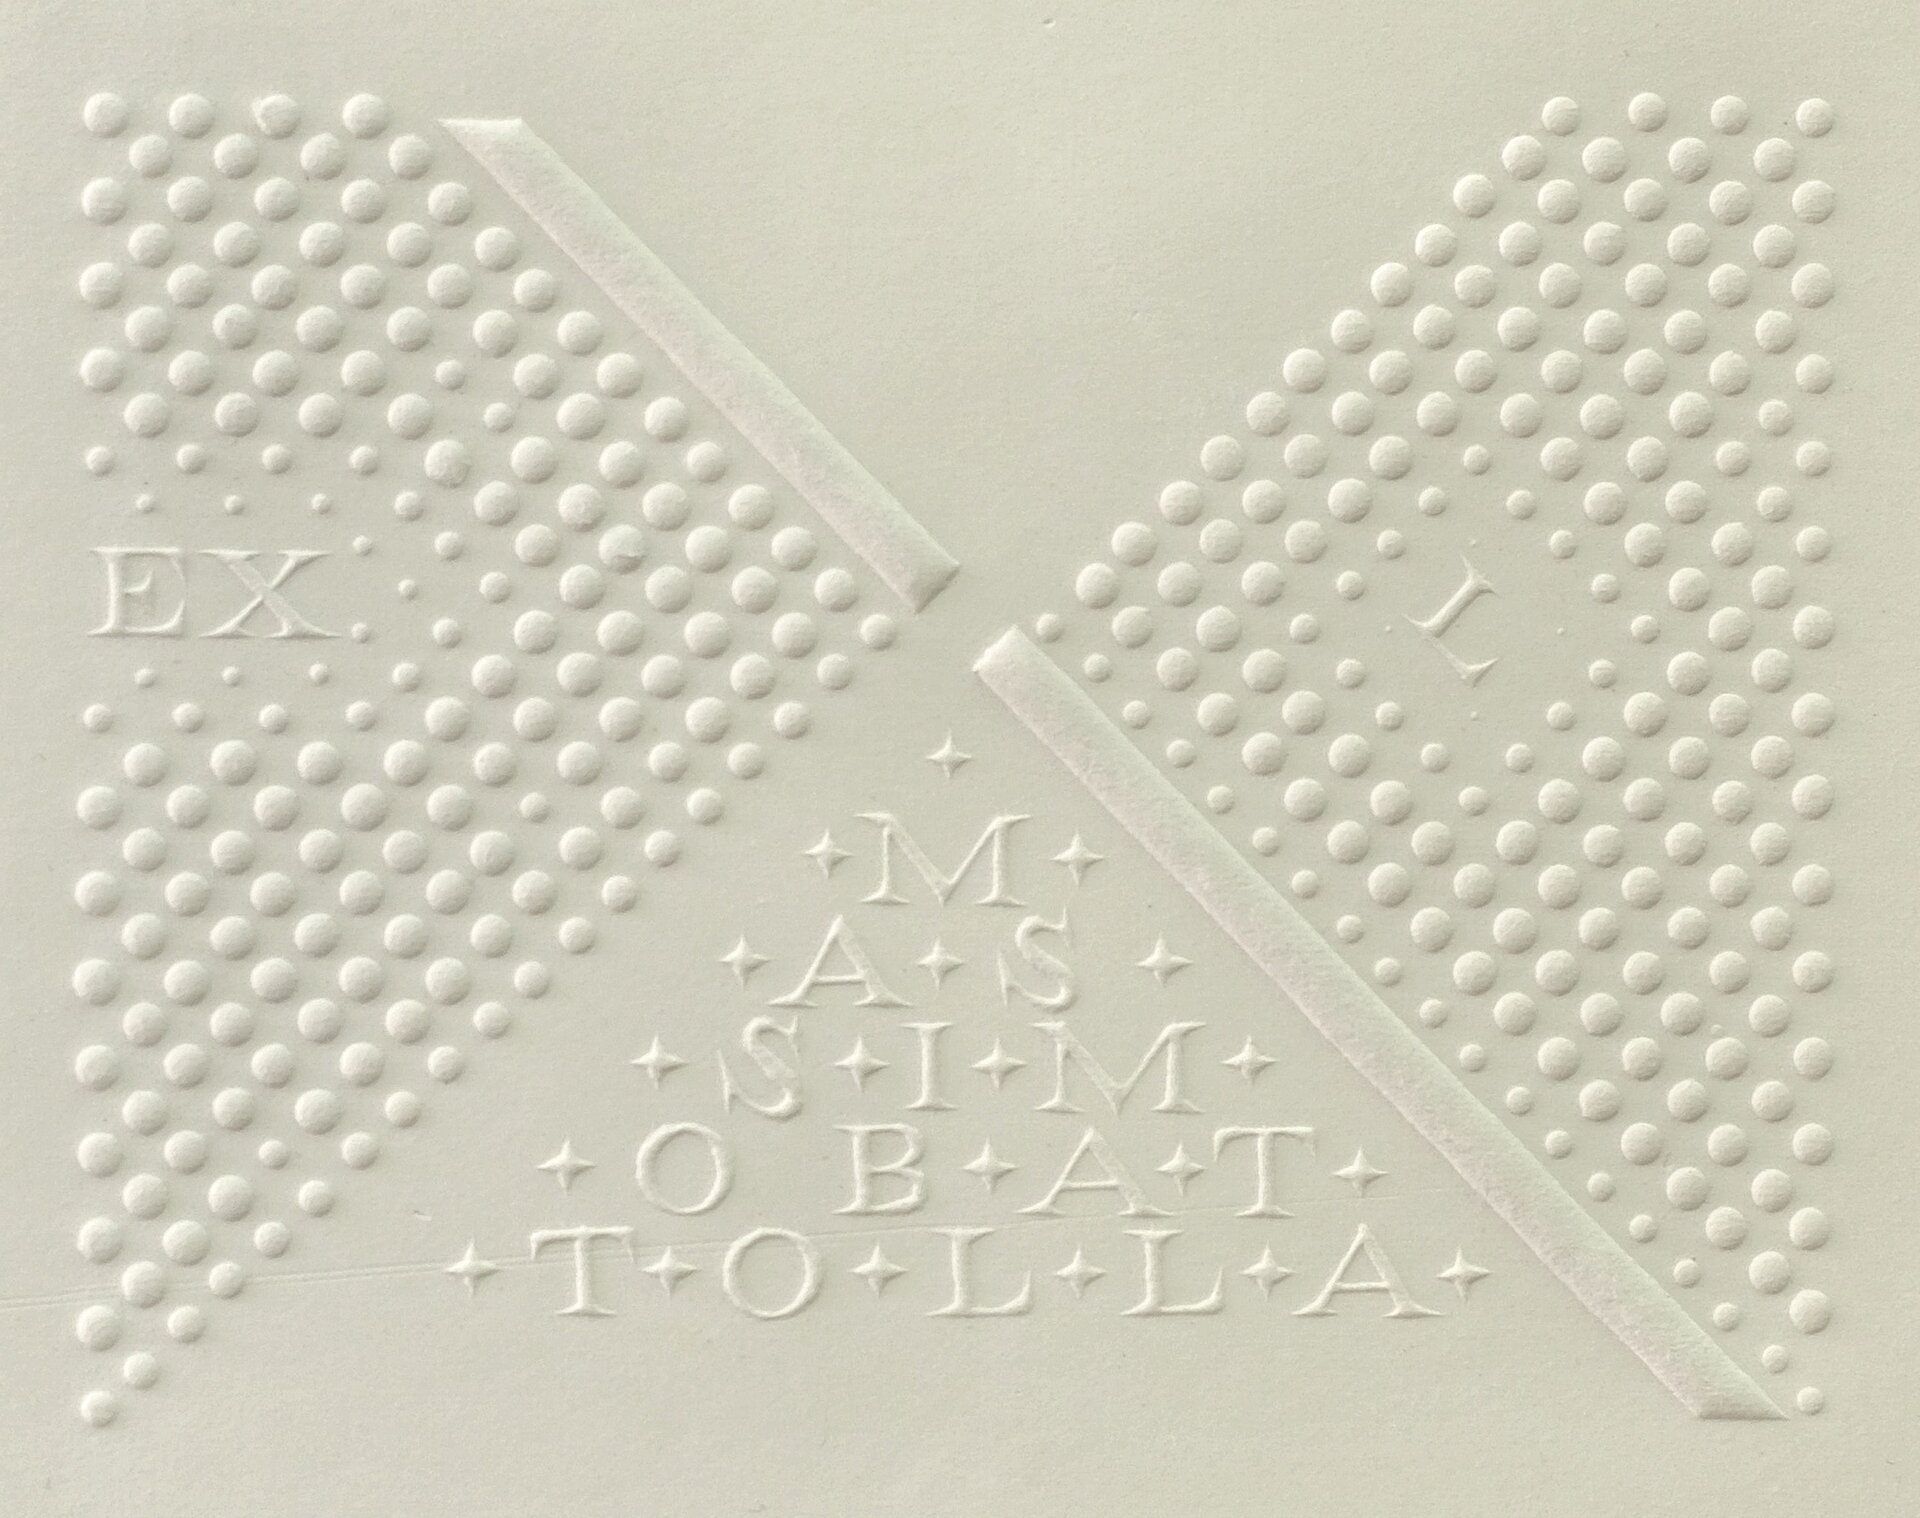 Ilustracja przedstawia pracę Marka Basiula „MassimoBattollaexl”. Praca podzielona jest na cztery części po przekątnej. Lewa i prawa strona to wypukłe kropki. Po przekątnej, z lewego górnego do prawego dolnego rogu znajdują się dwa wypukłe, wąskie czworokąty. Górna część jest gładka, a w dolnej znajdują się litery oddzielone gwiazdkami.